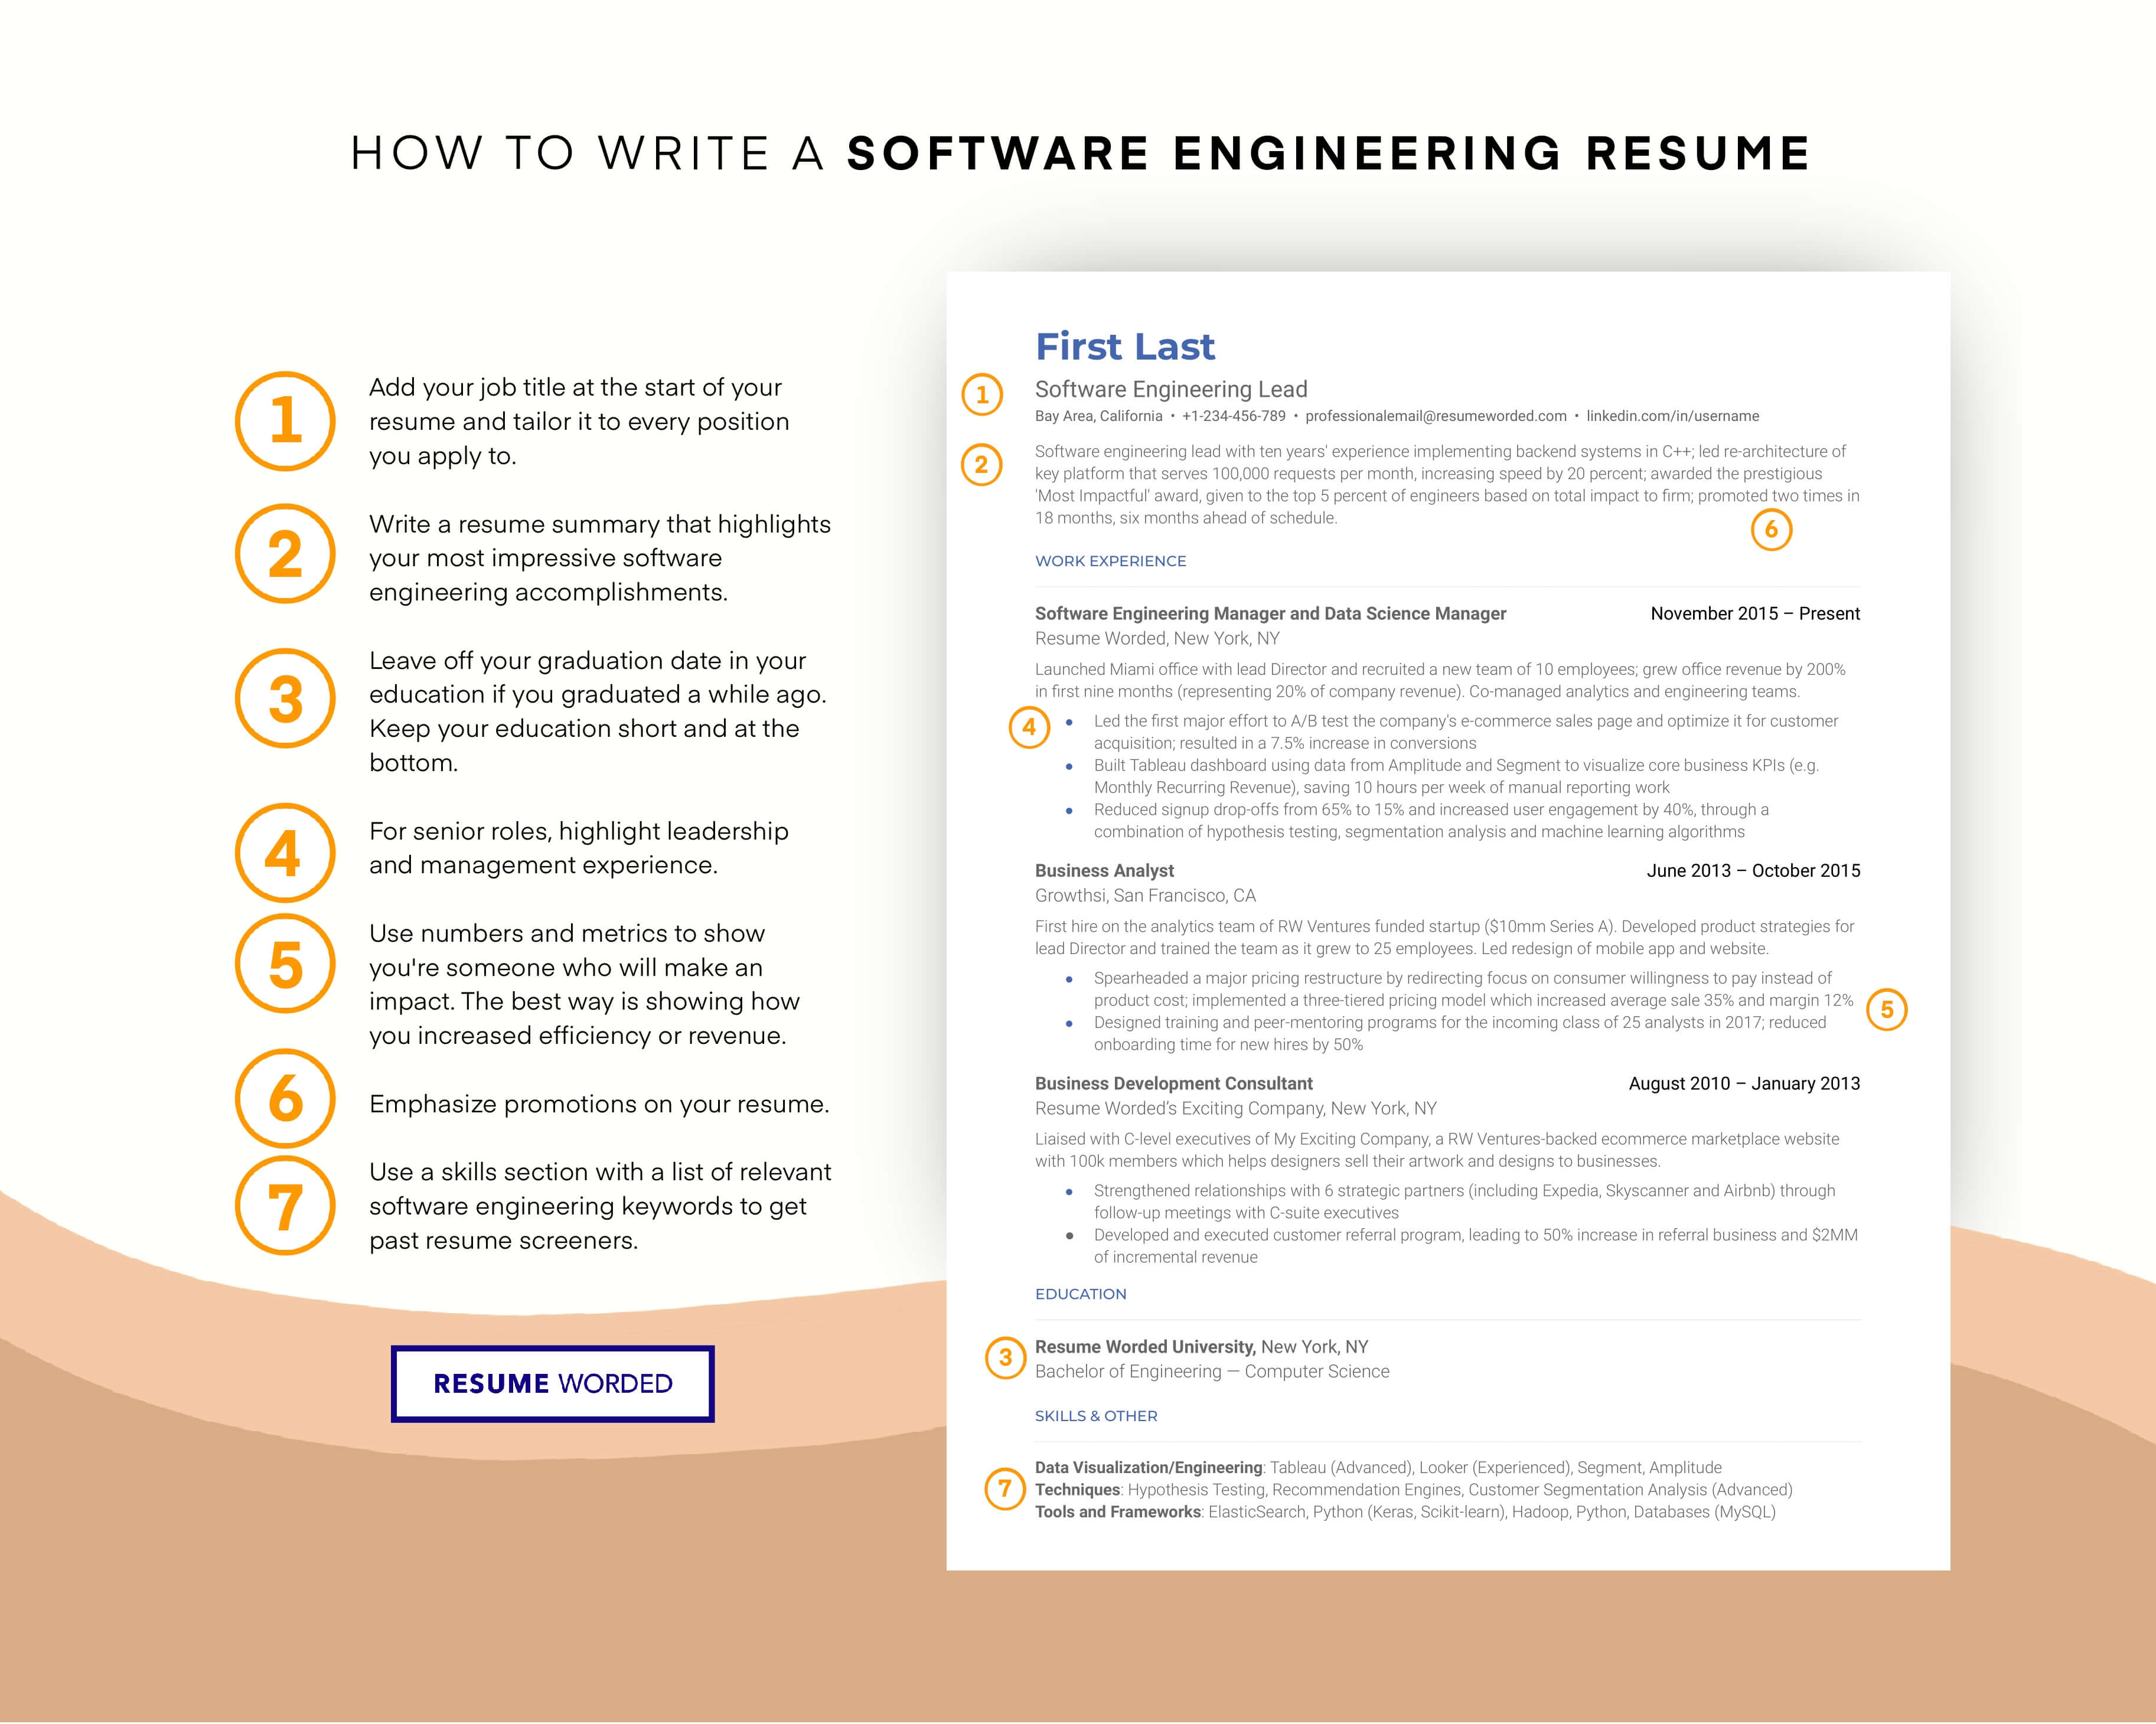 Highlight relevant software skills - Data Entry Clerk Resume